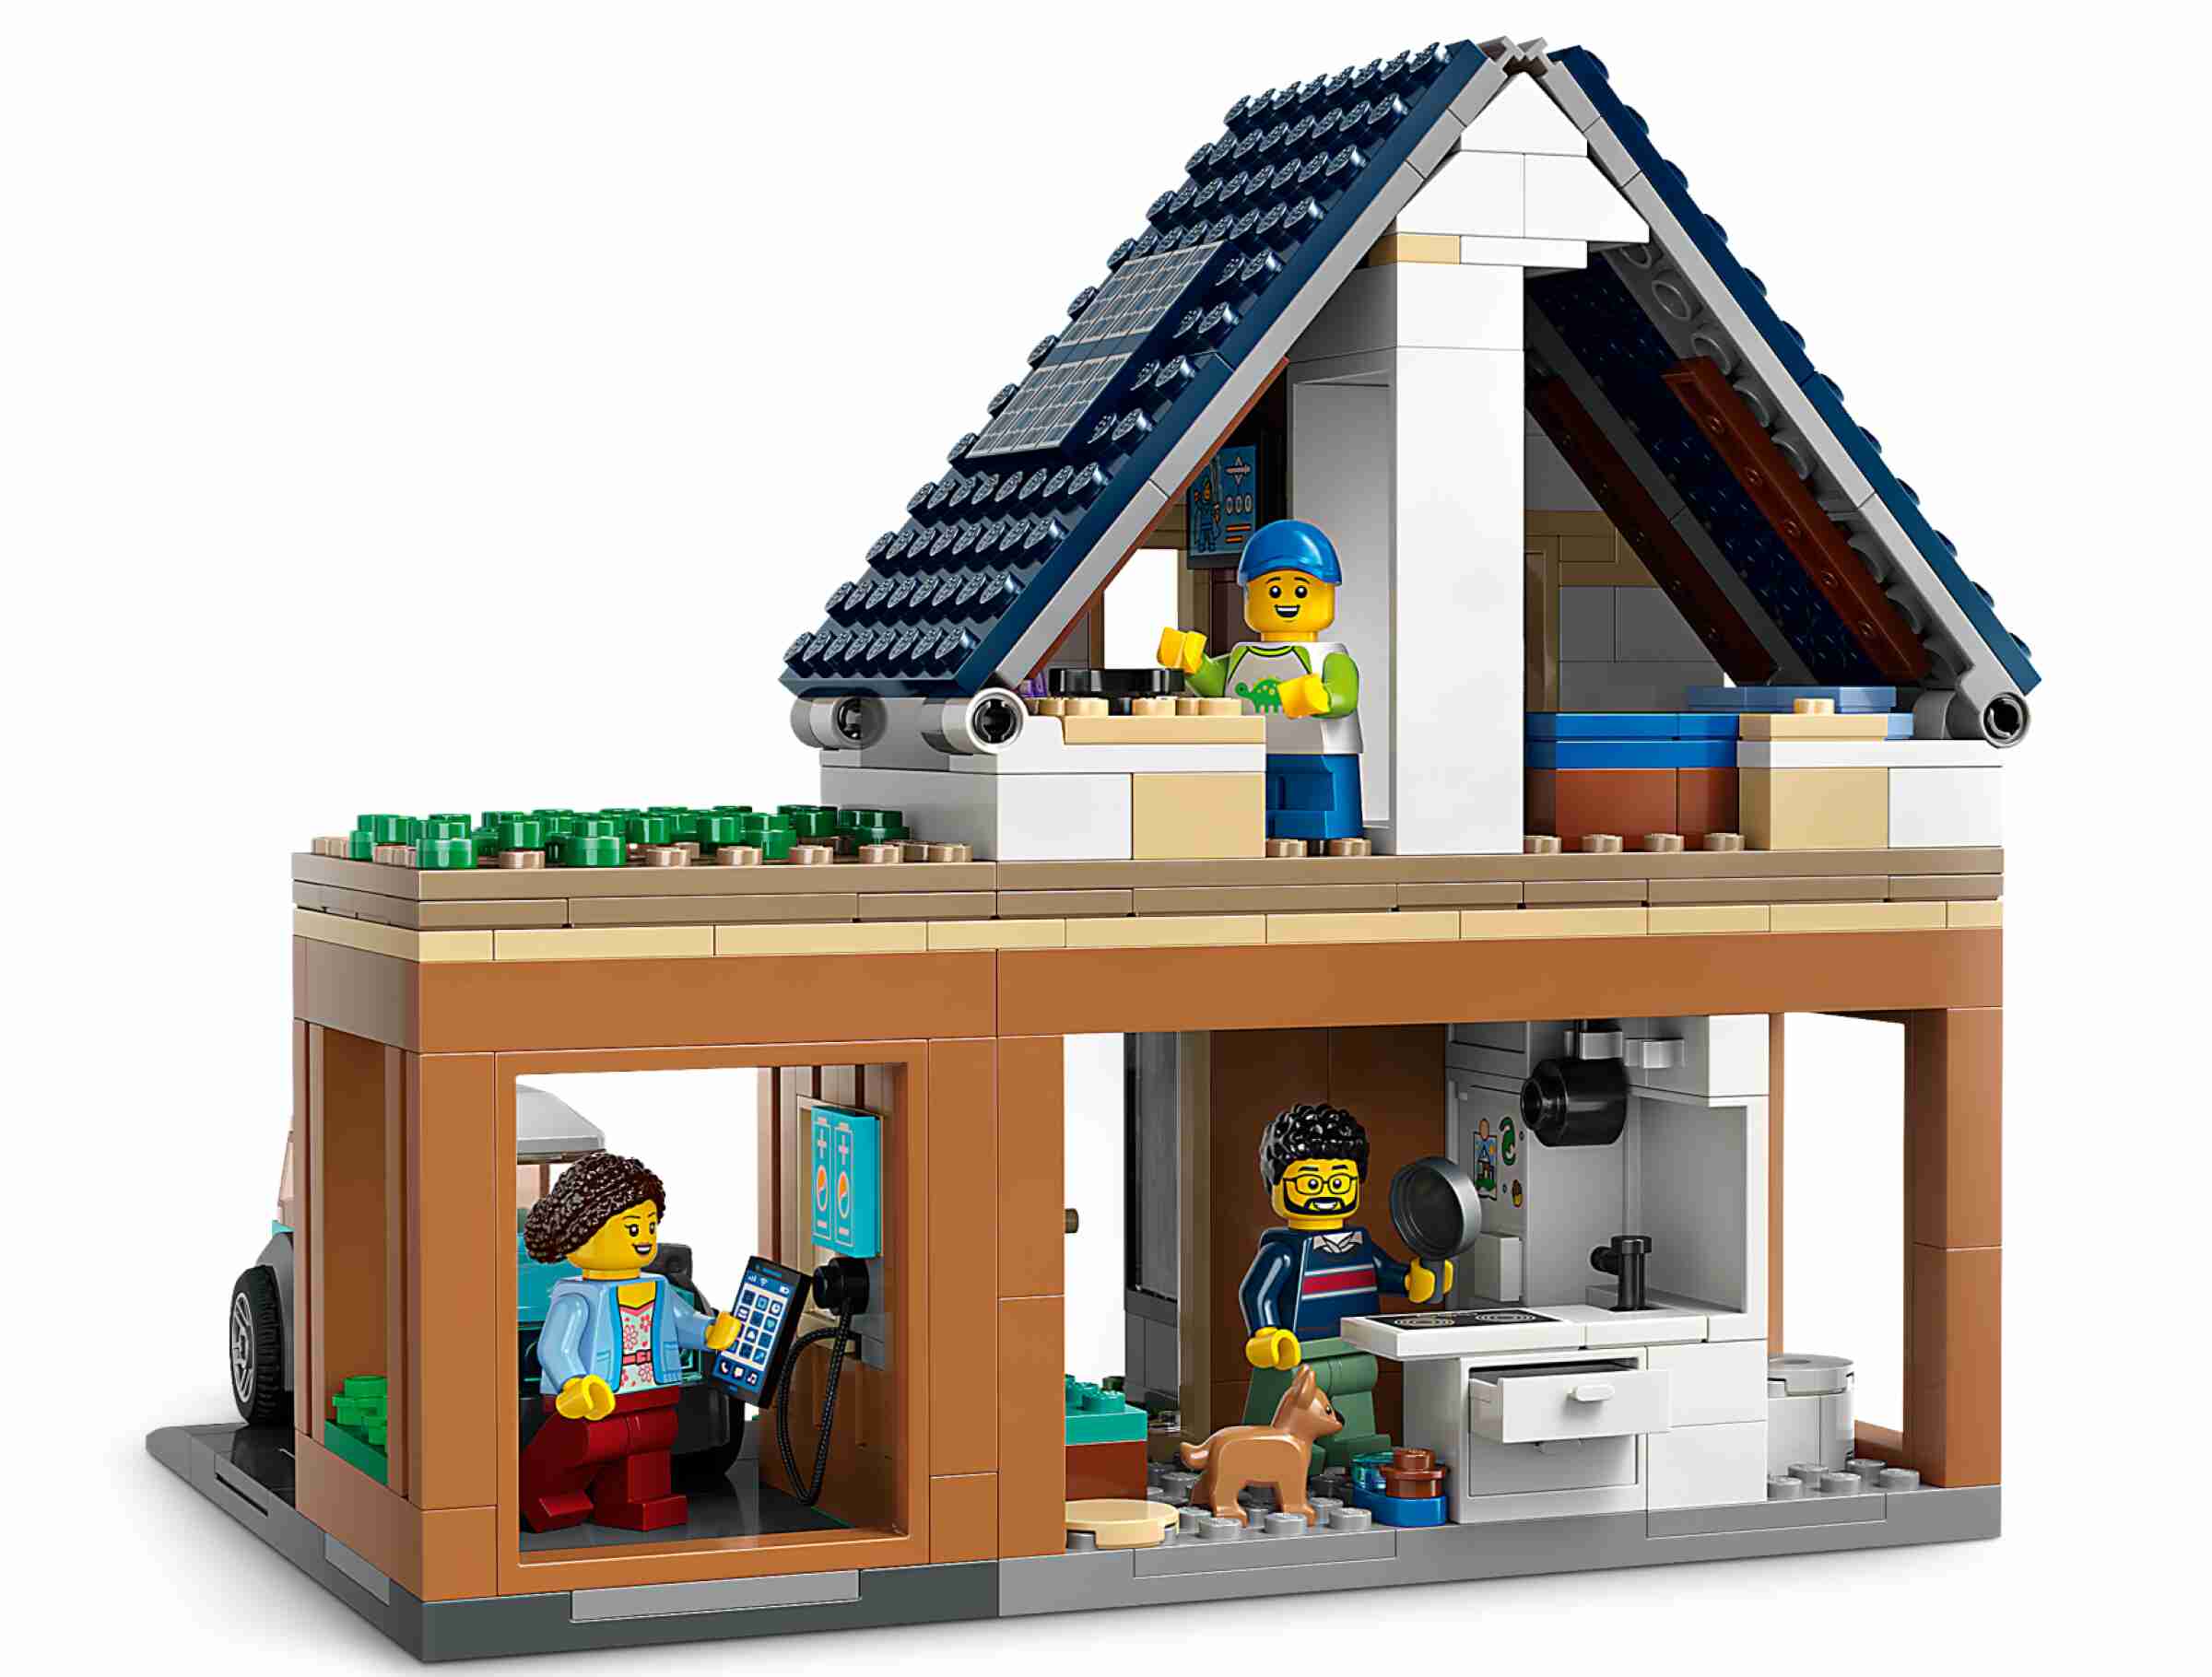 LEGO 60398 City Familienhaus mit Elektroauto, 3 Minifiguren und ein Welpe